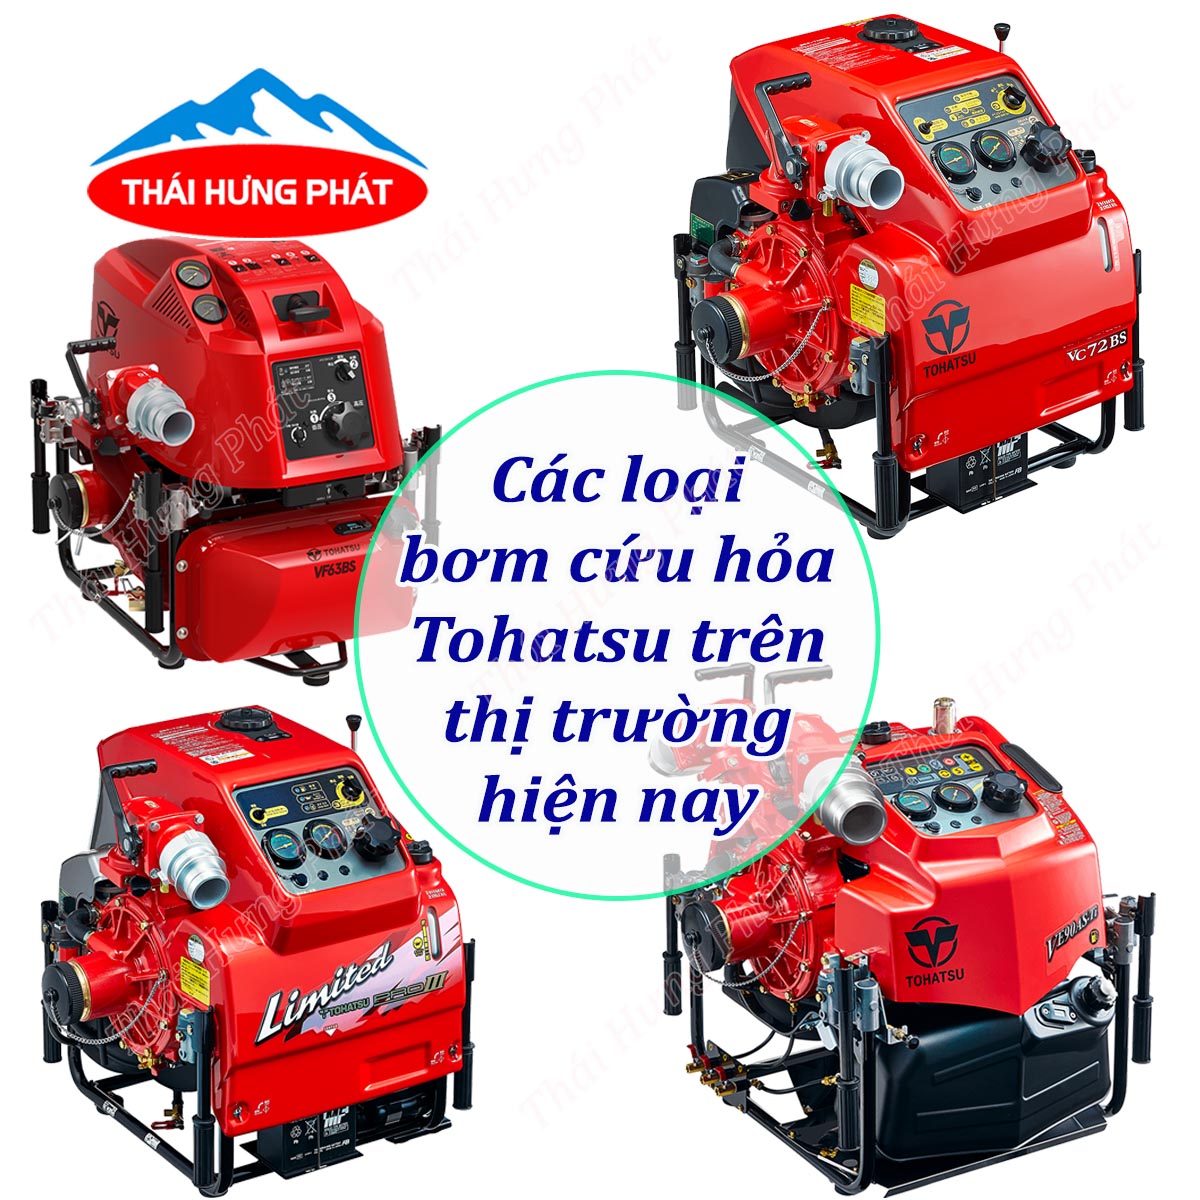 Các loại máy bơm chữa cháy Tohatsu bán chạy nhất tại Thái Hưng Phát